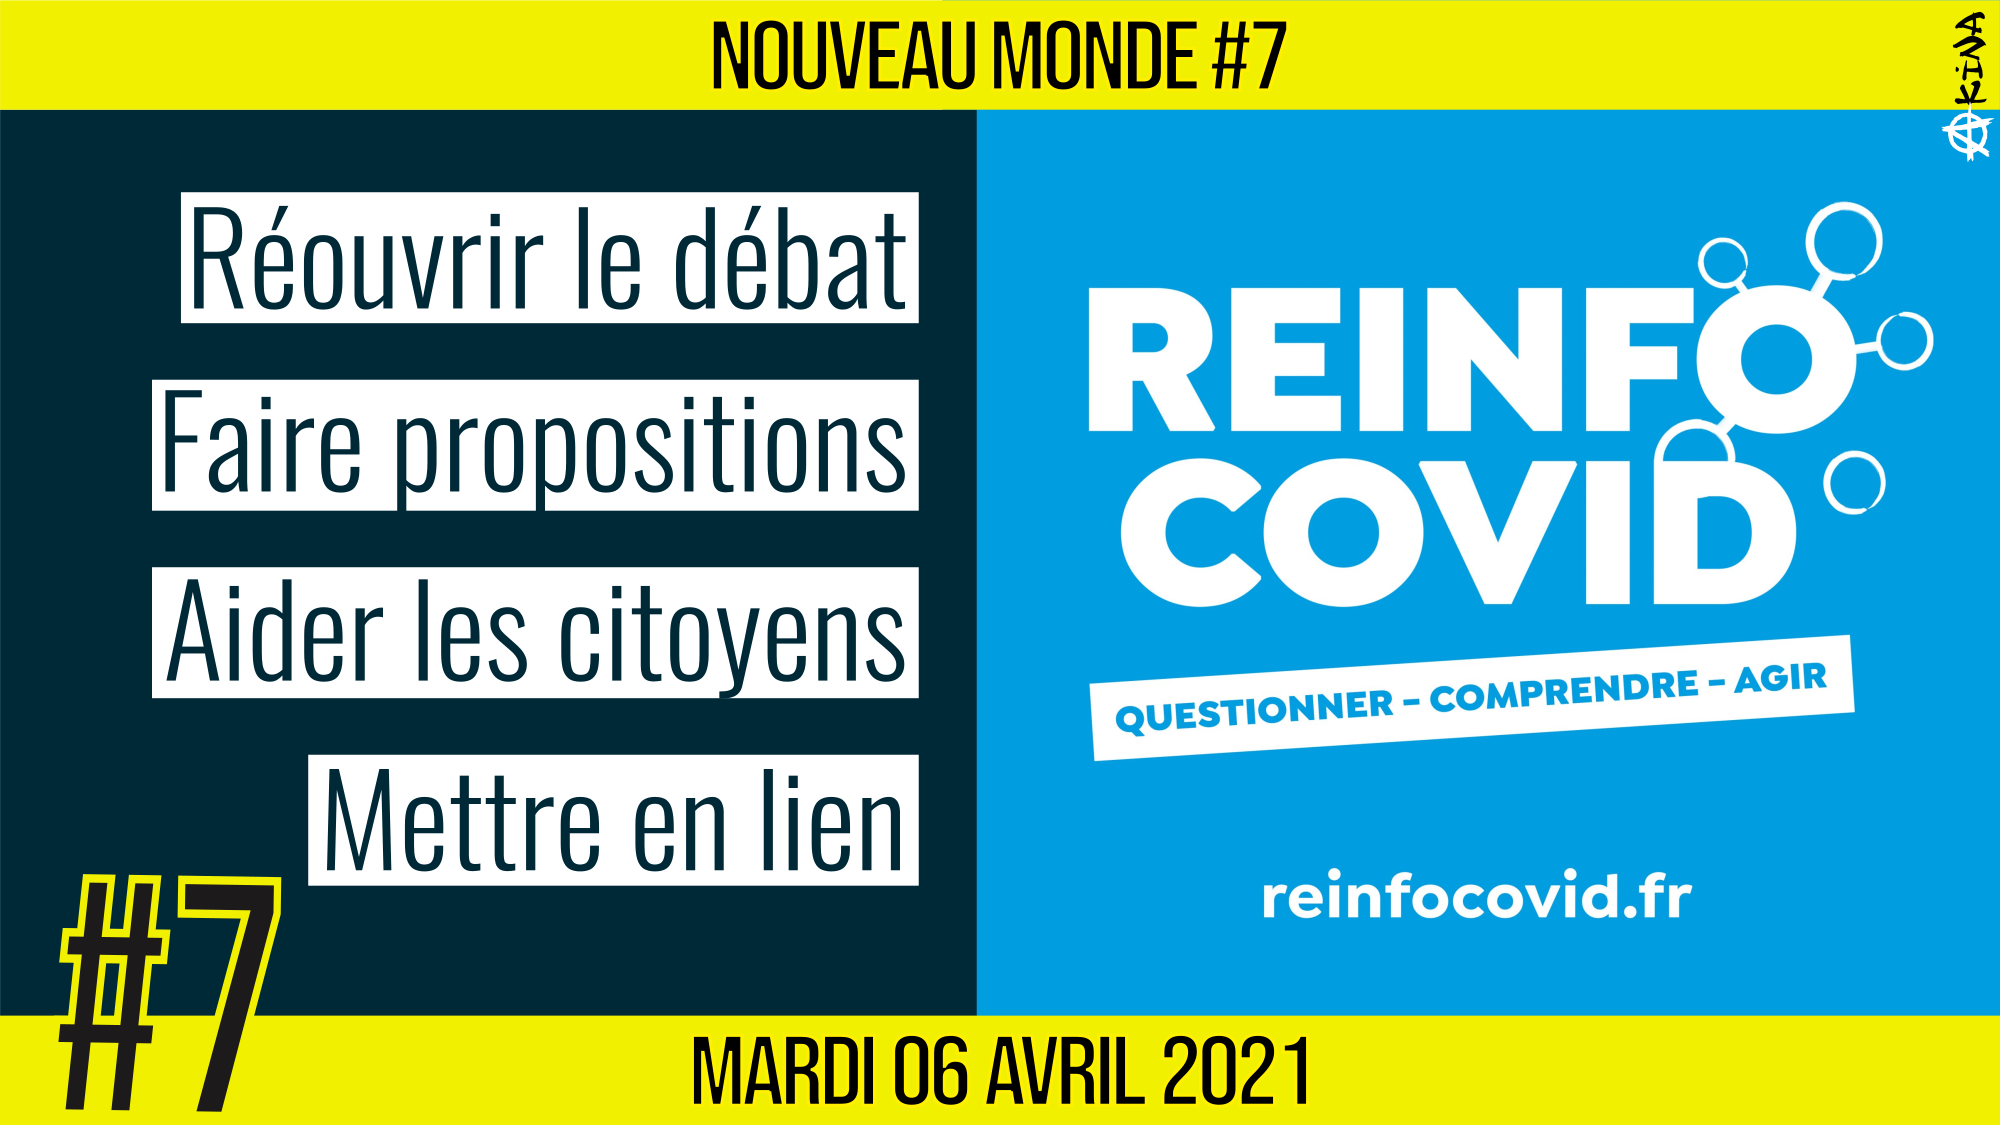 🌅 NOUVEAU MONDE #7 🔑 Association Reinfo Covid 🗣 François & Renaud 📆 06-04-2021